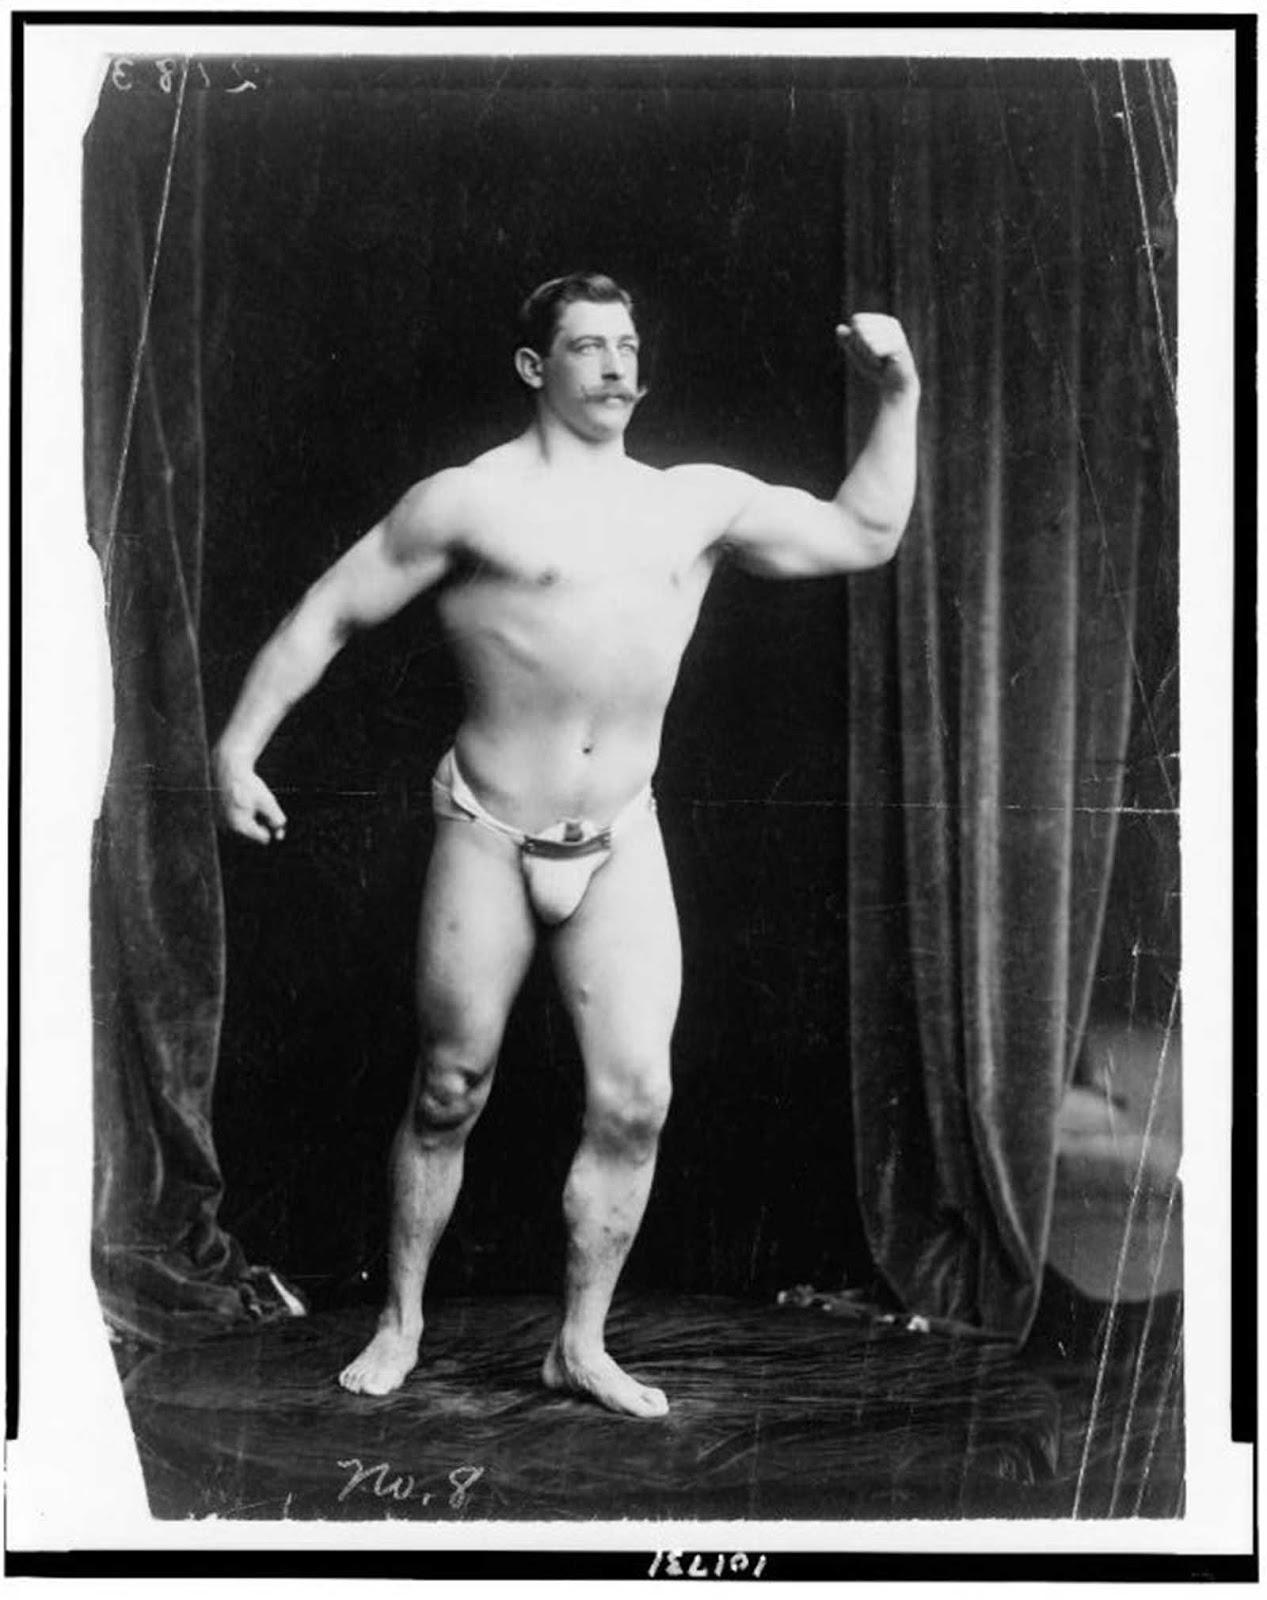 Le premier moderne, les bodybuilders, les années 1900